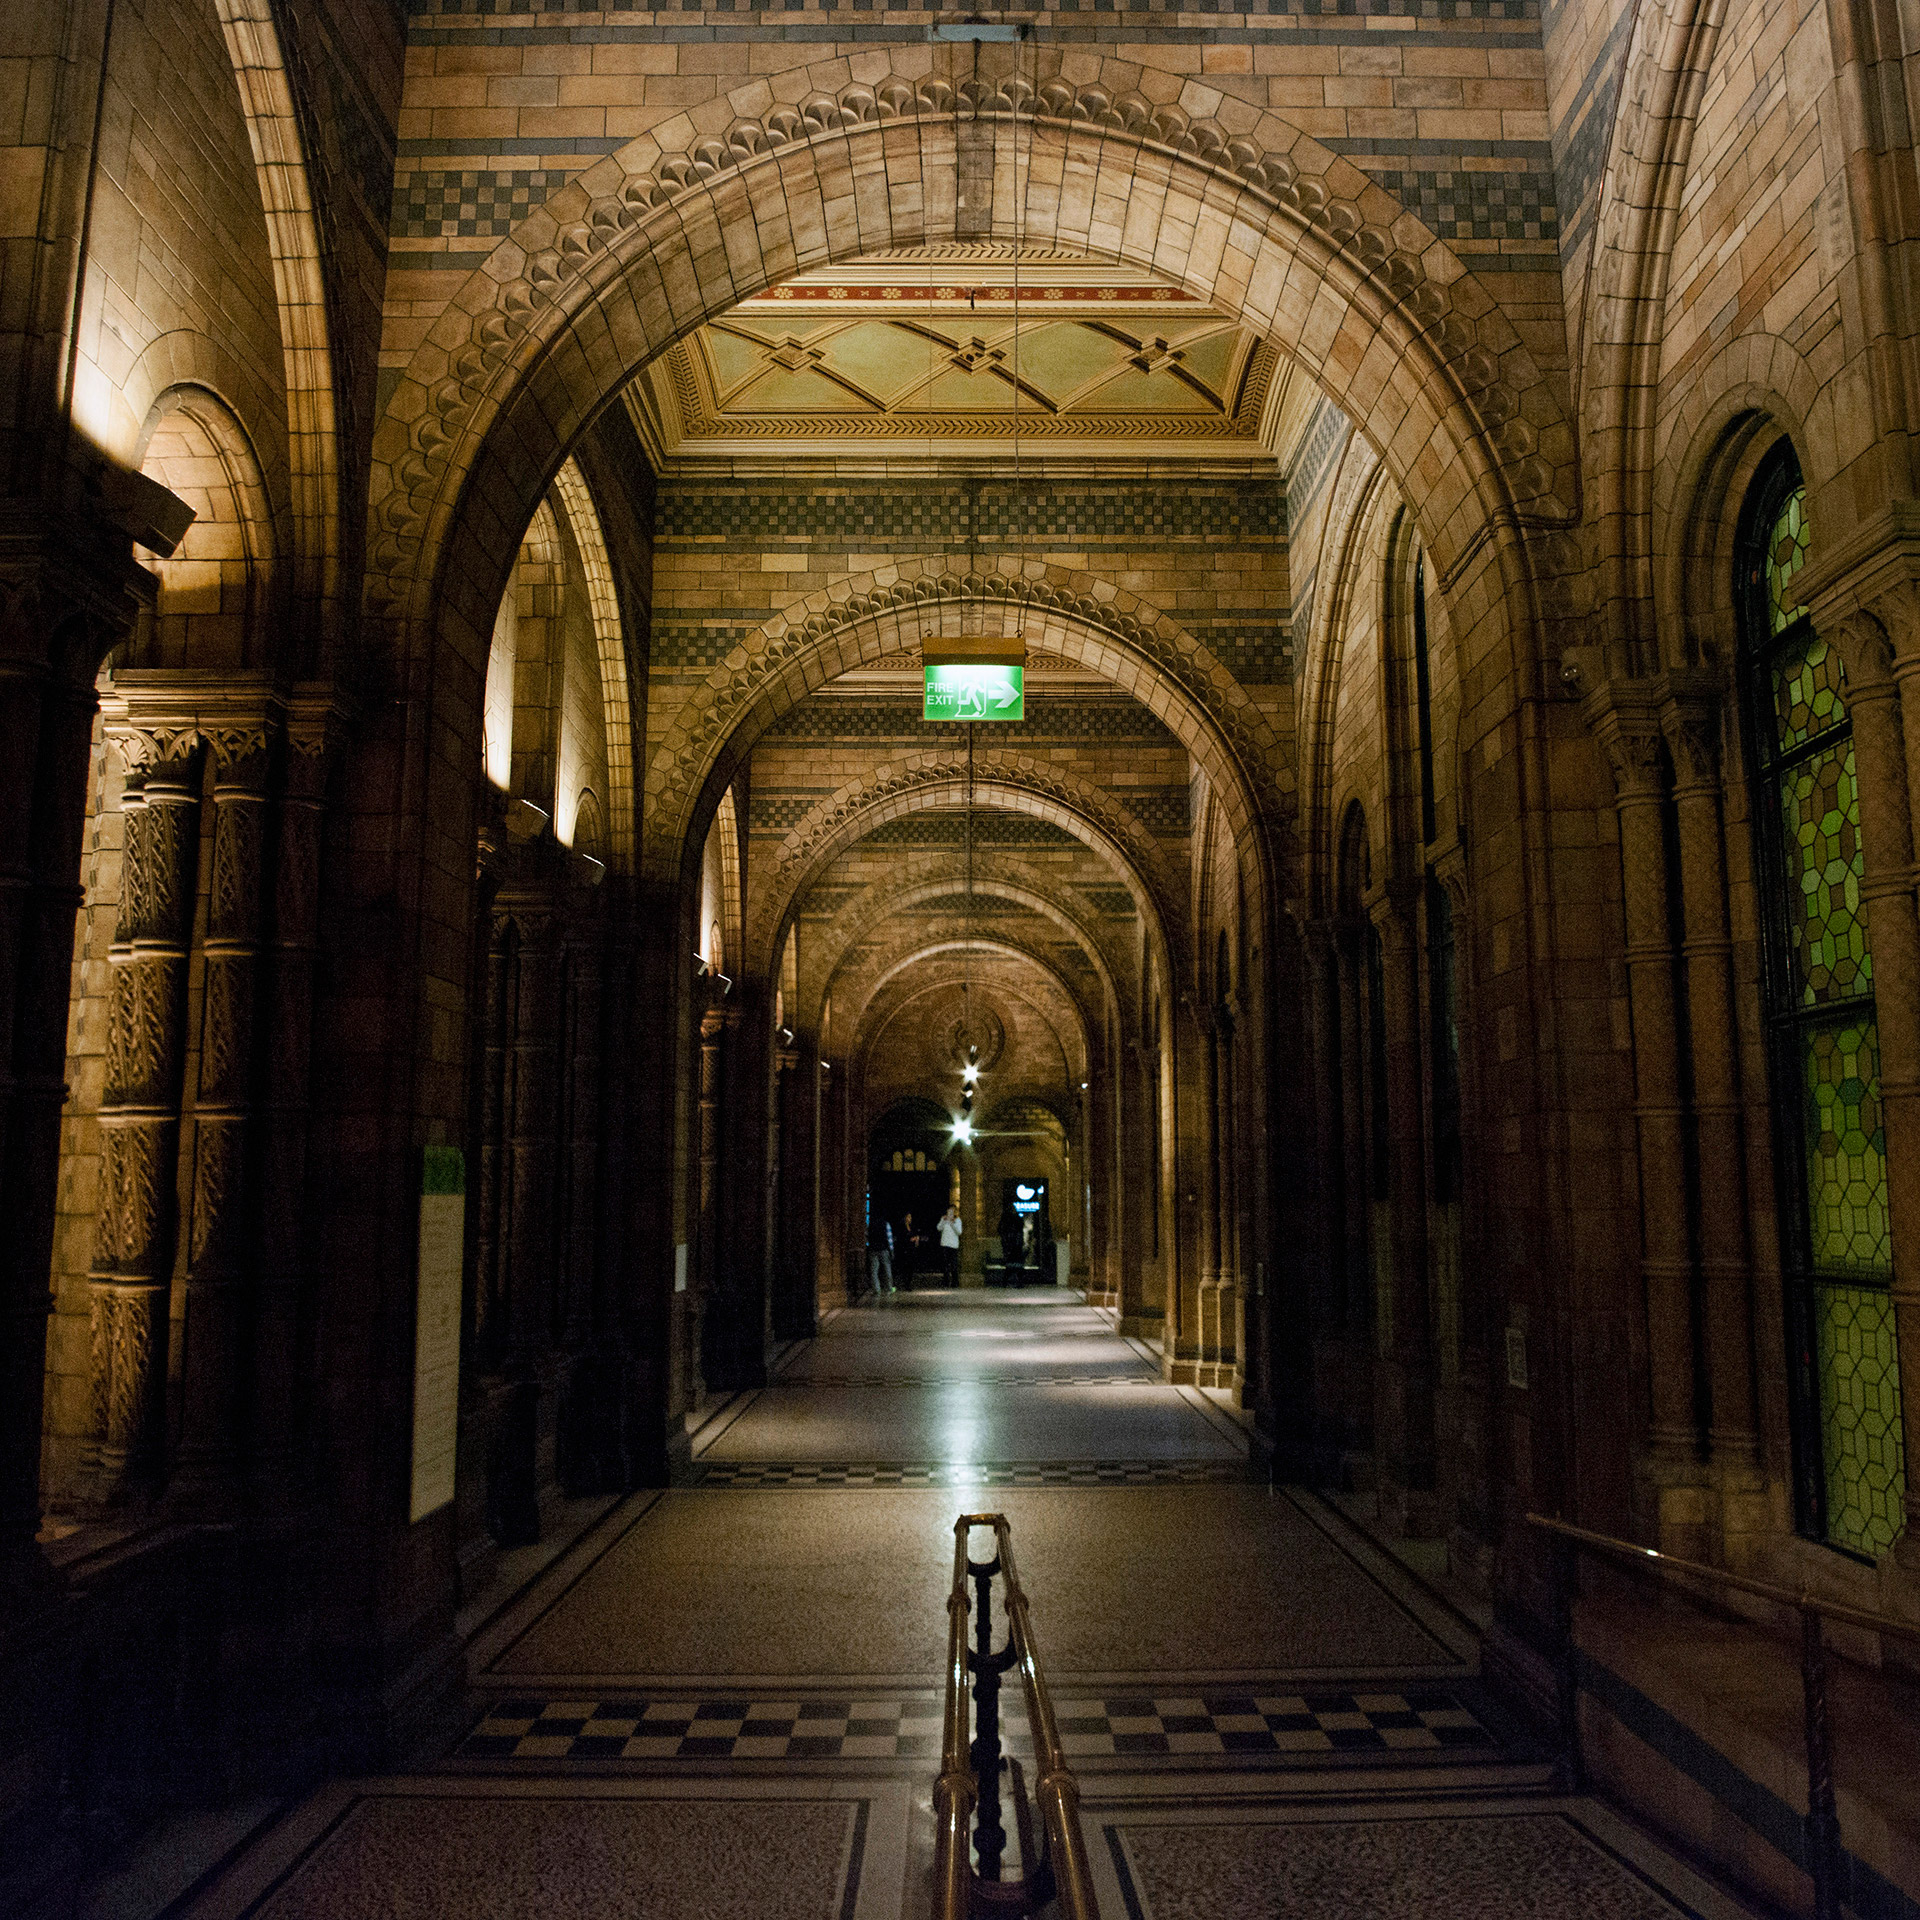 Muzeum historii naturalnej, Londyn, architektura, podróże, podróże po Europie, fotografia Monika Turska